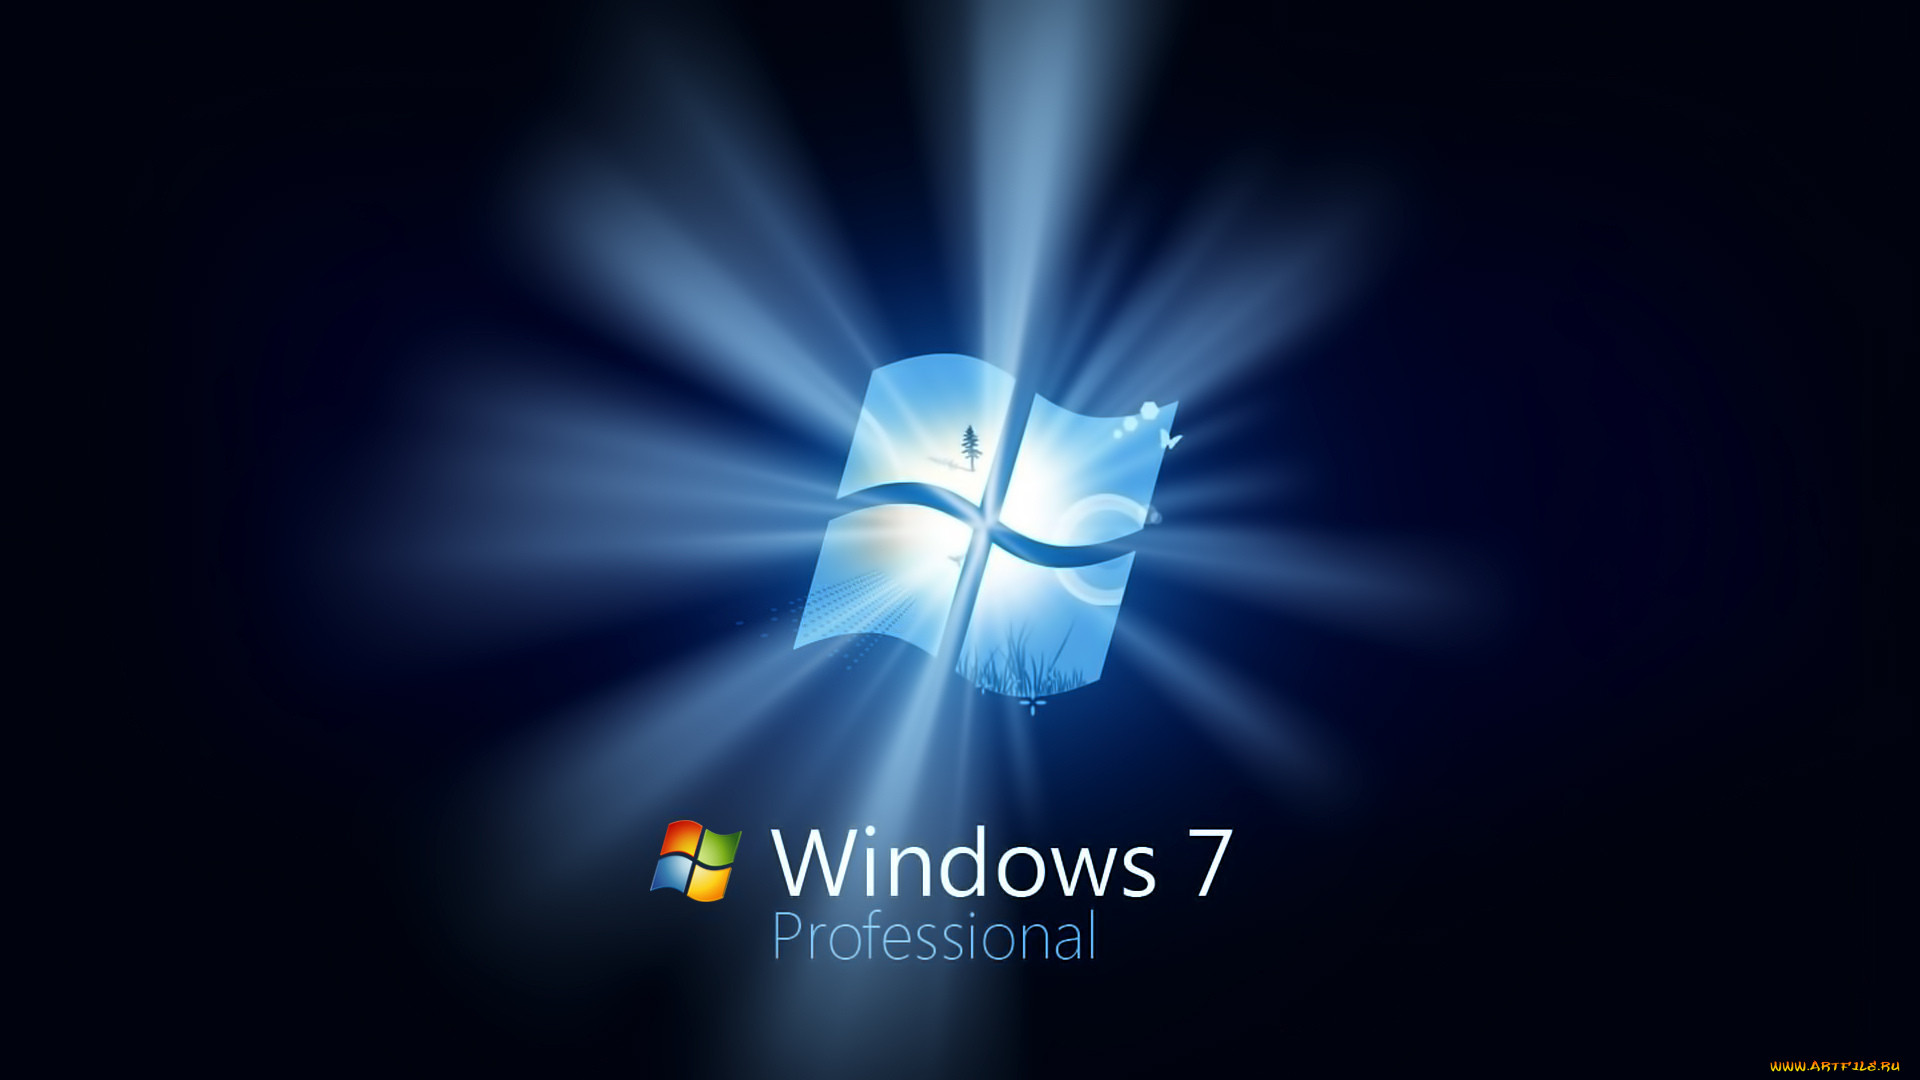 Windows 7 life. Windows 7 рабочий стол. Картинки виндовс. Фон Windows 7. Windows 7 профессиональная.